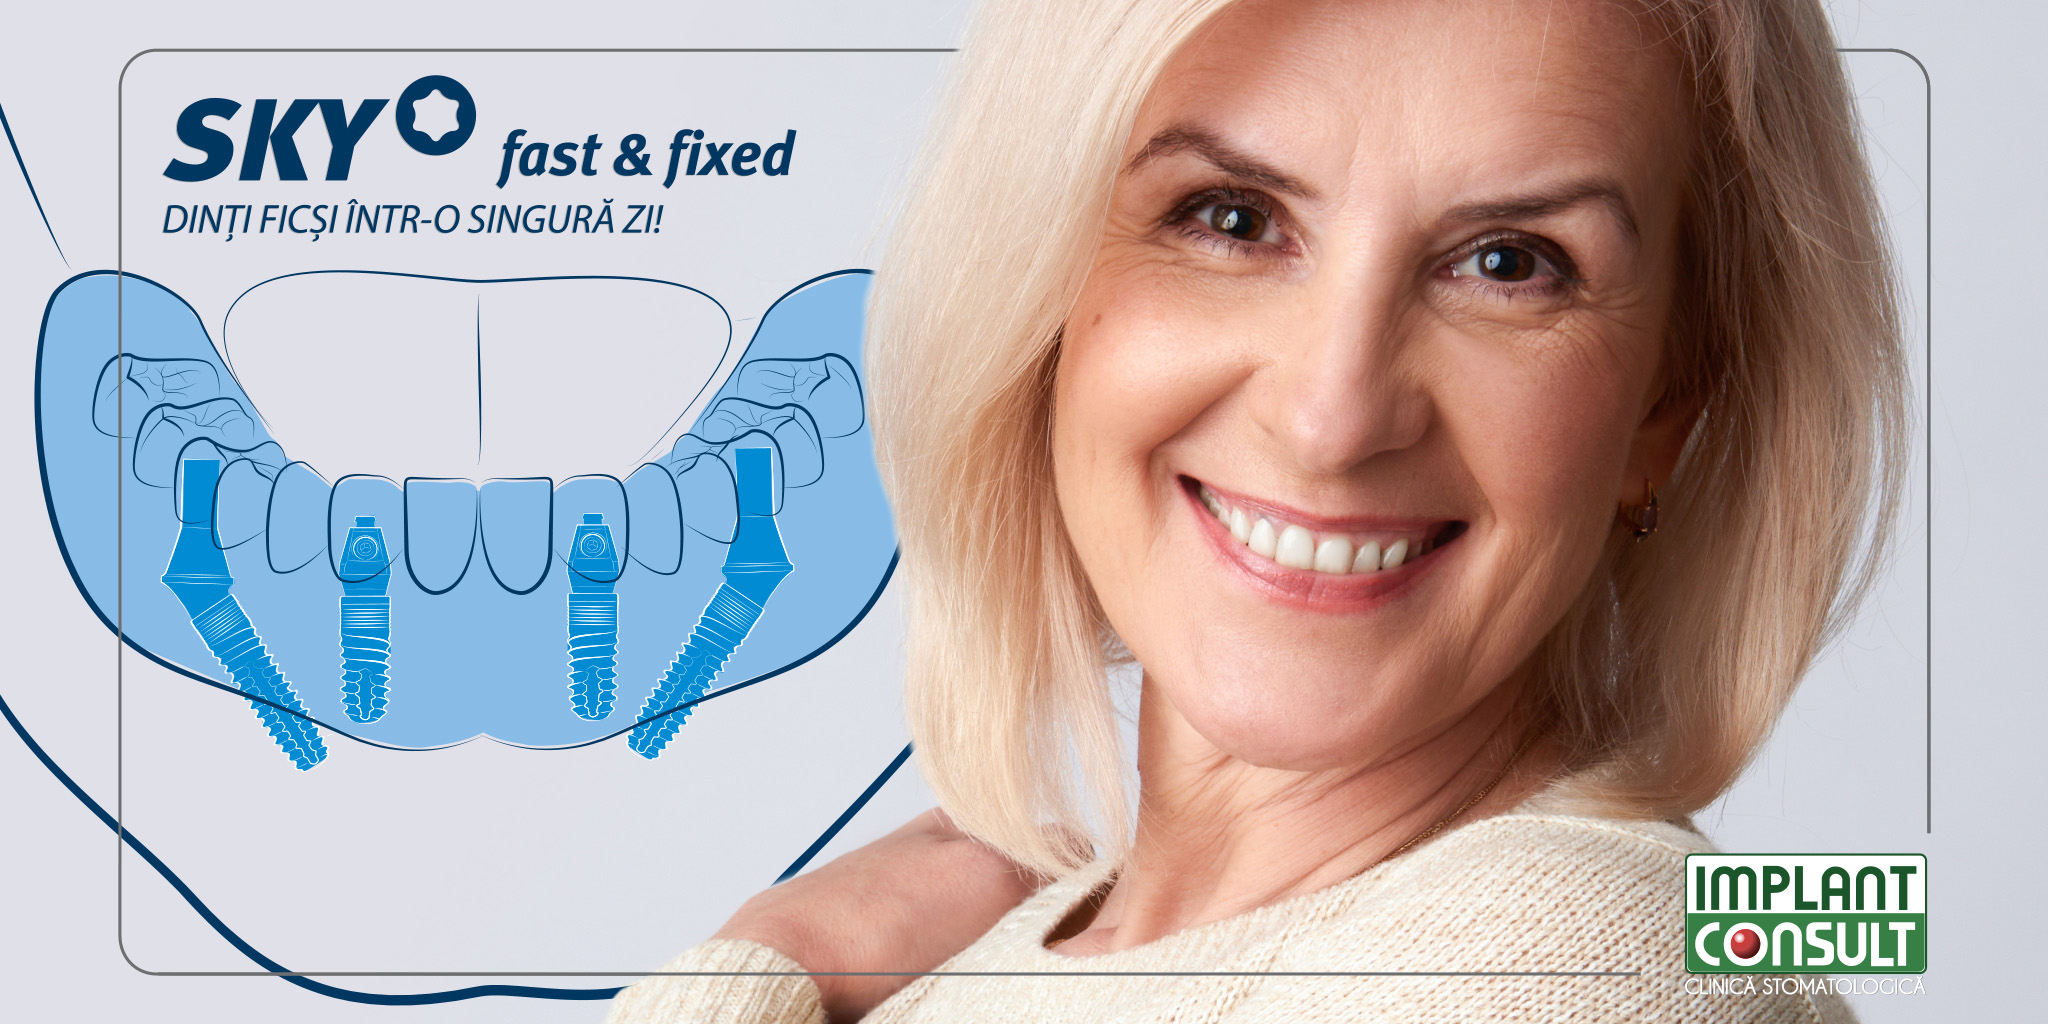 De ce dinti ficsi in locul protezei dentare mobile? SKY fast & fixed - Un concept terapeutic revolutionar. Dinti intr-o zi la Implant Consult